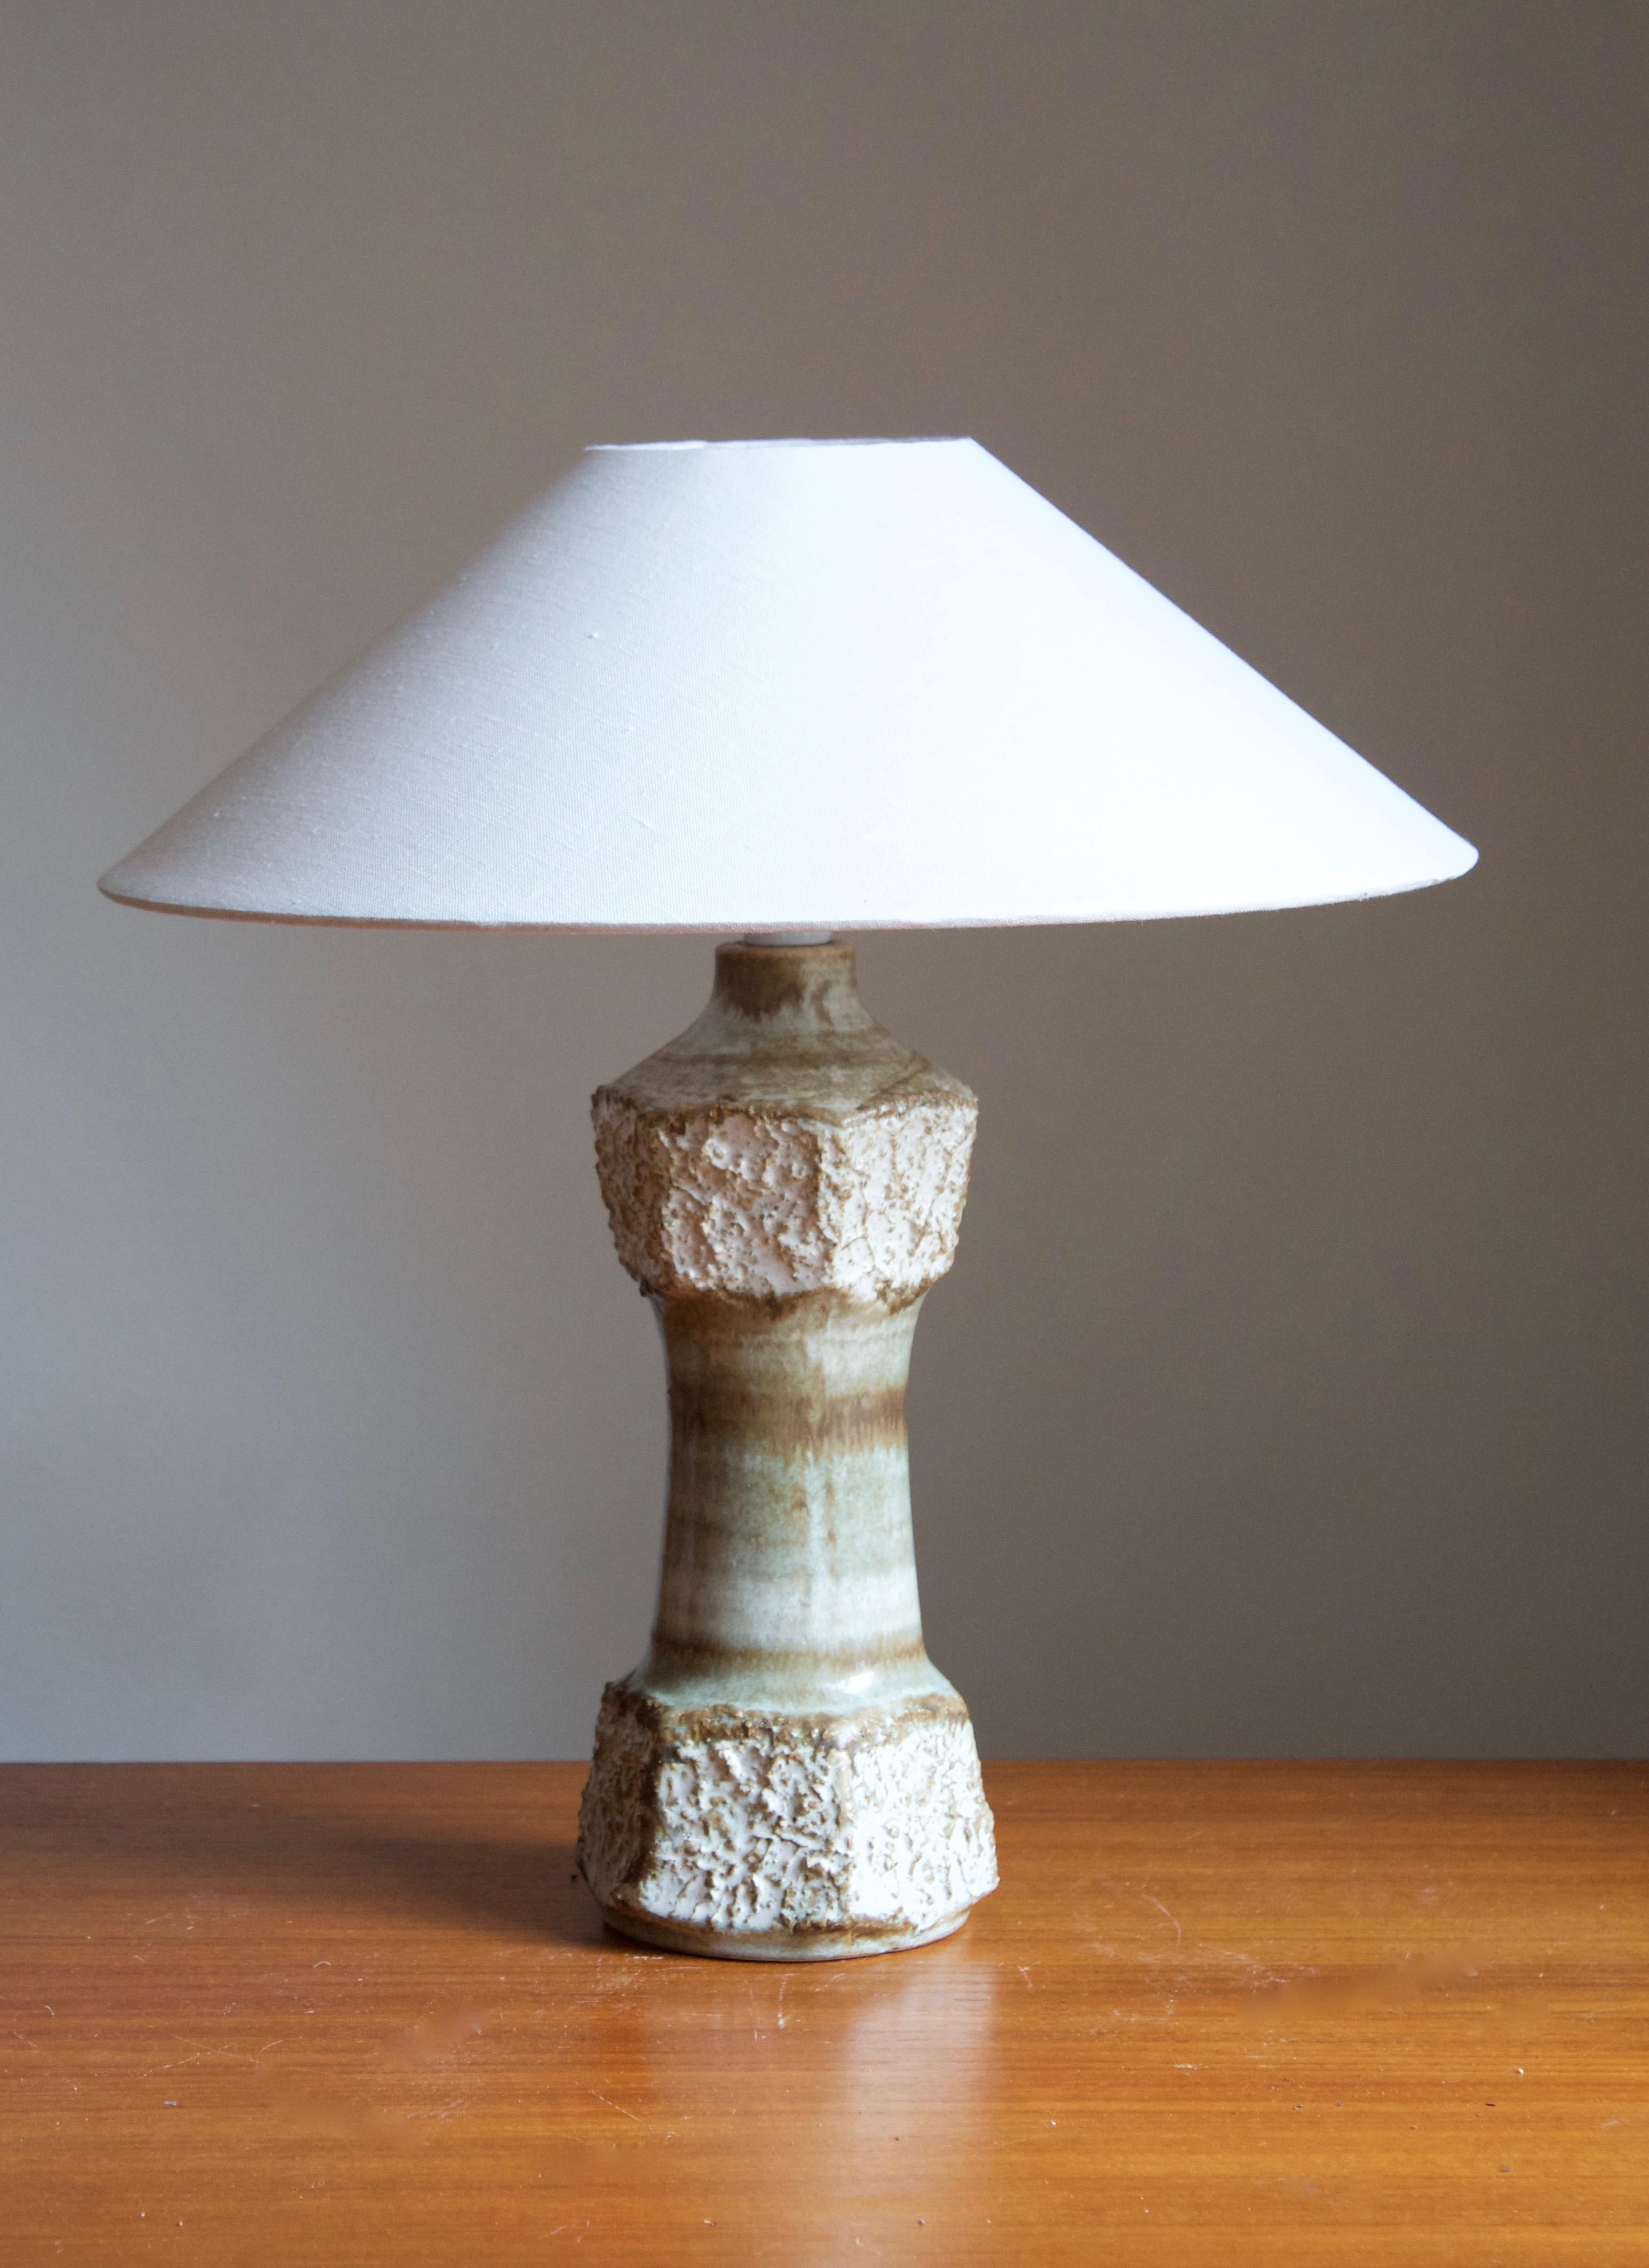 Une lampe de table en grès, exécutée par Bruno Karlsson. Dans son studio, appelé 